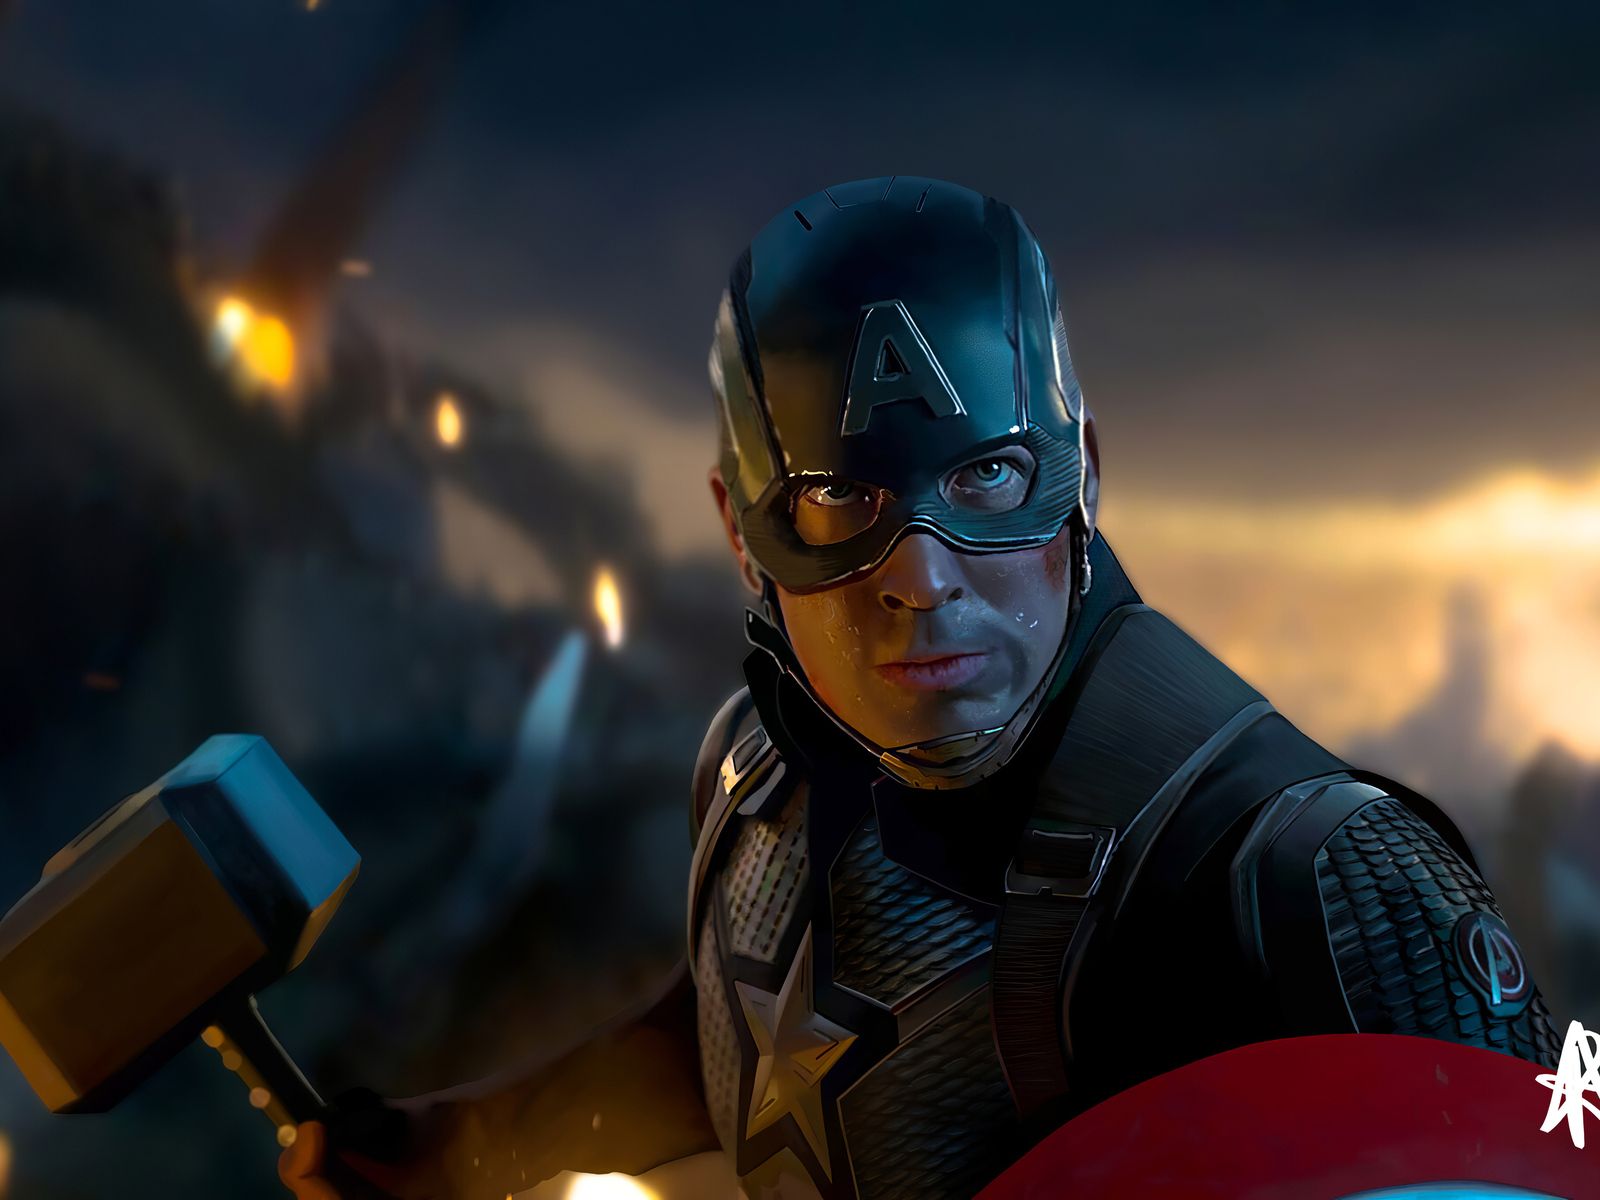 Captain America Hammer 4k 2020 1600x1200 Resolution HD